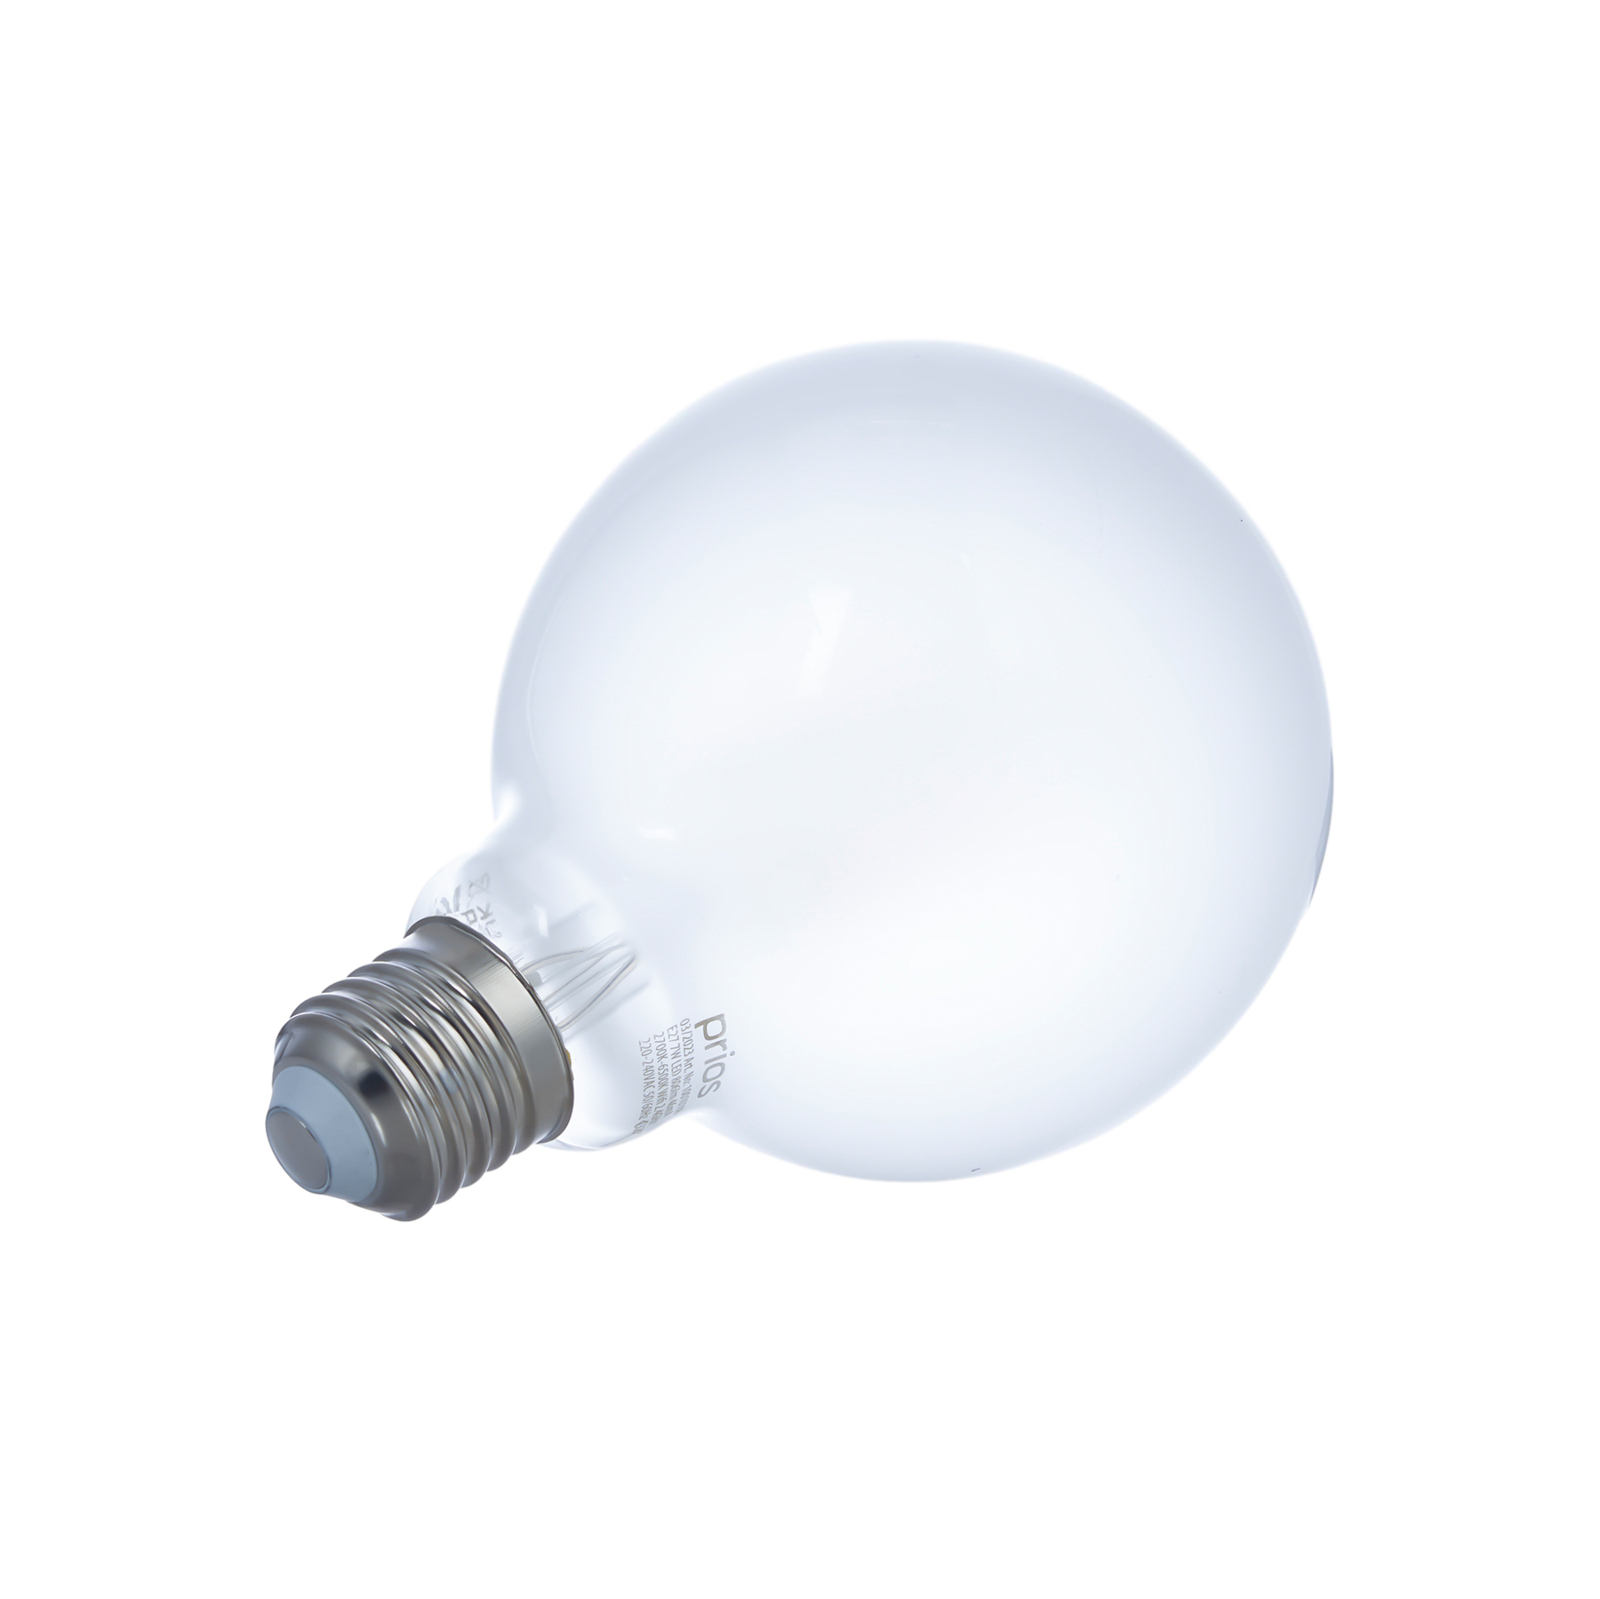 LUUMR Smart LED bulb set of 2 E27 G95 7W matt Tuya